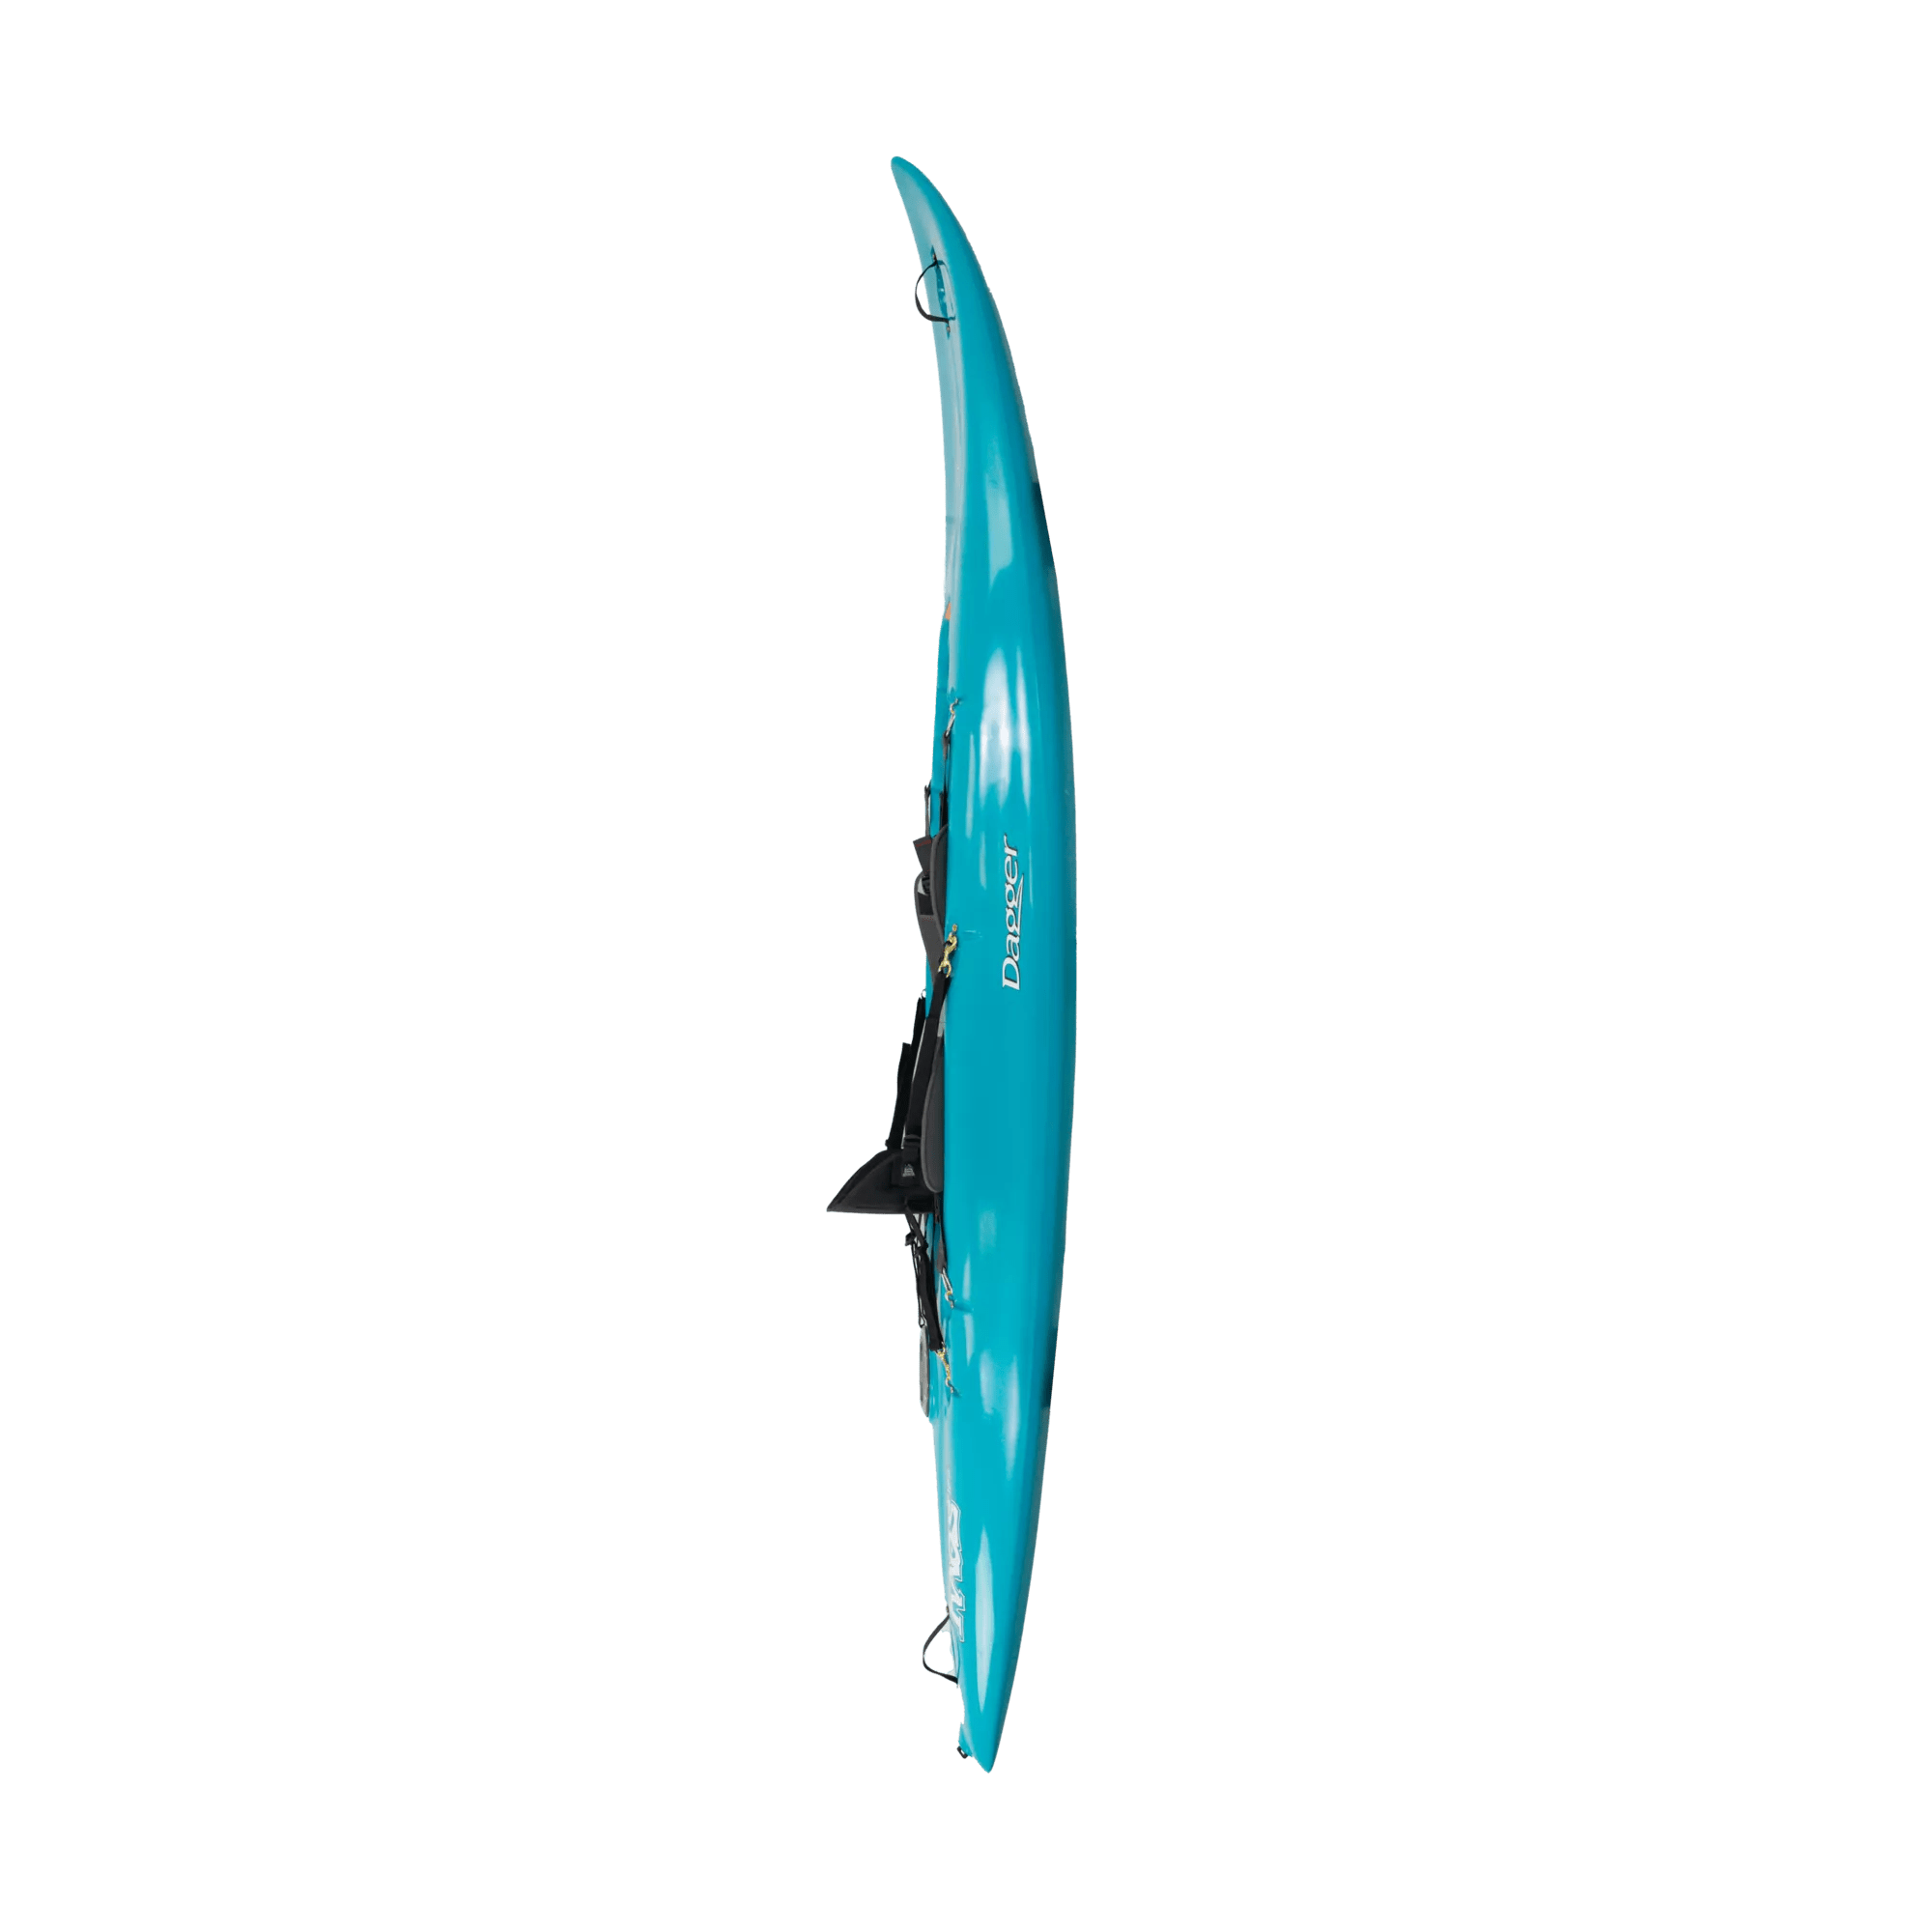 DAGGER - Kaos 10.2 Surf Kayak - Blue - 9050107091 - SIDE